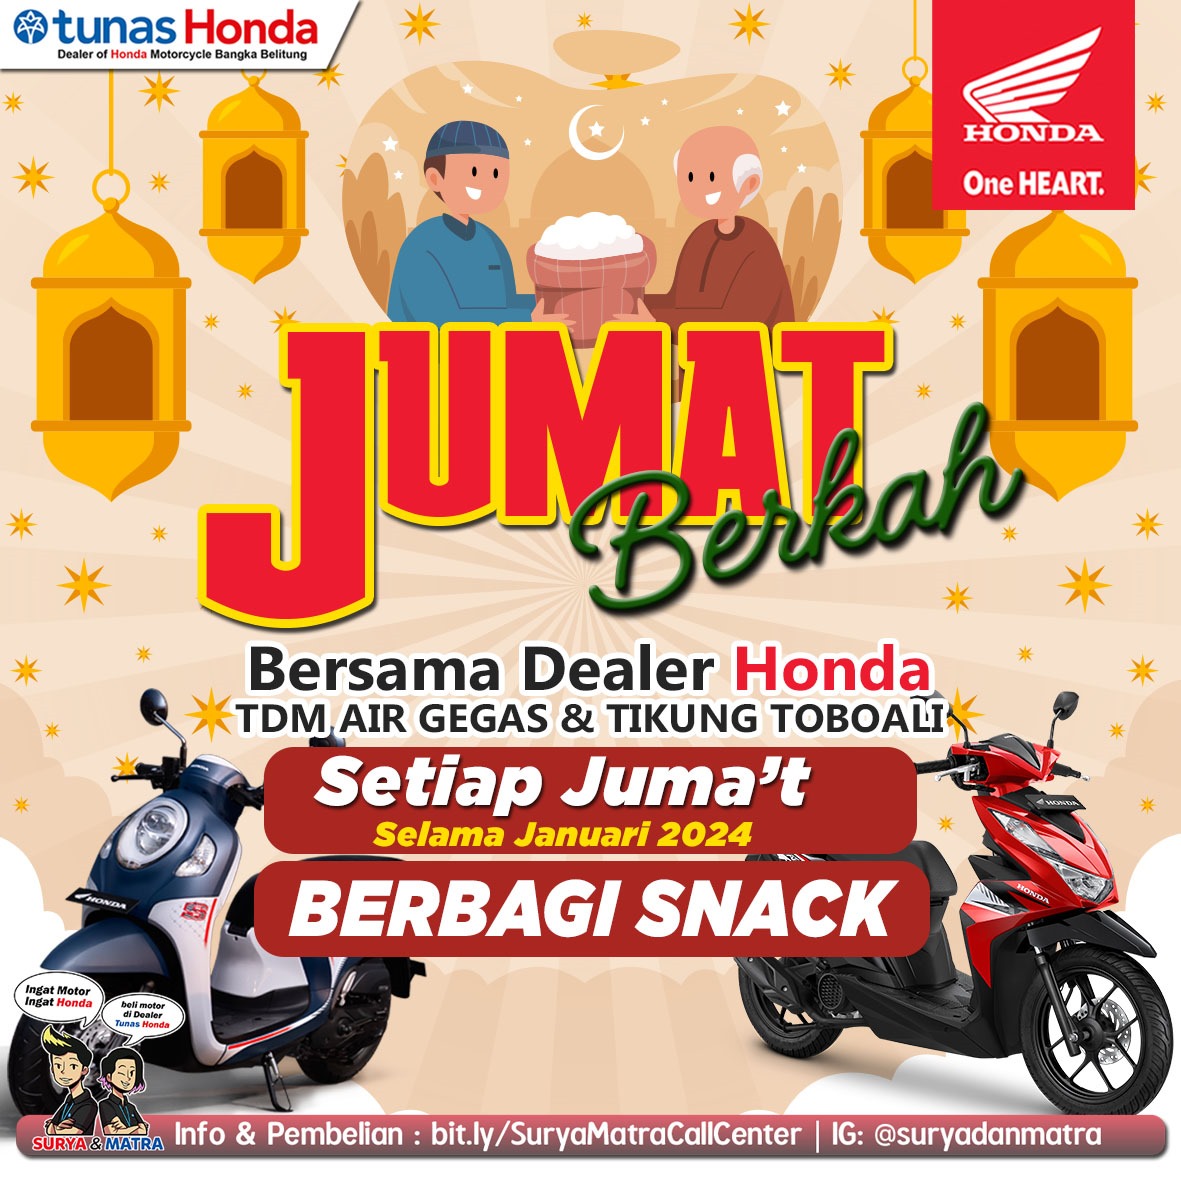 Honda TDM Air Gegas dan Toboali, Bagikan Paket Snack Gratis Setiap Jum'at